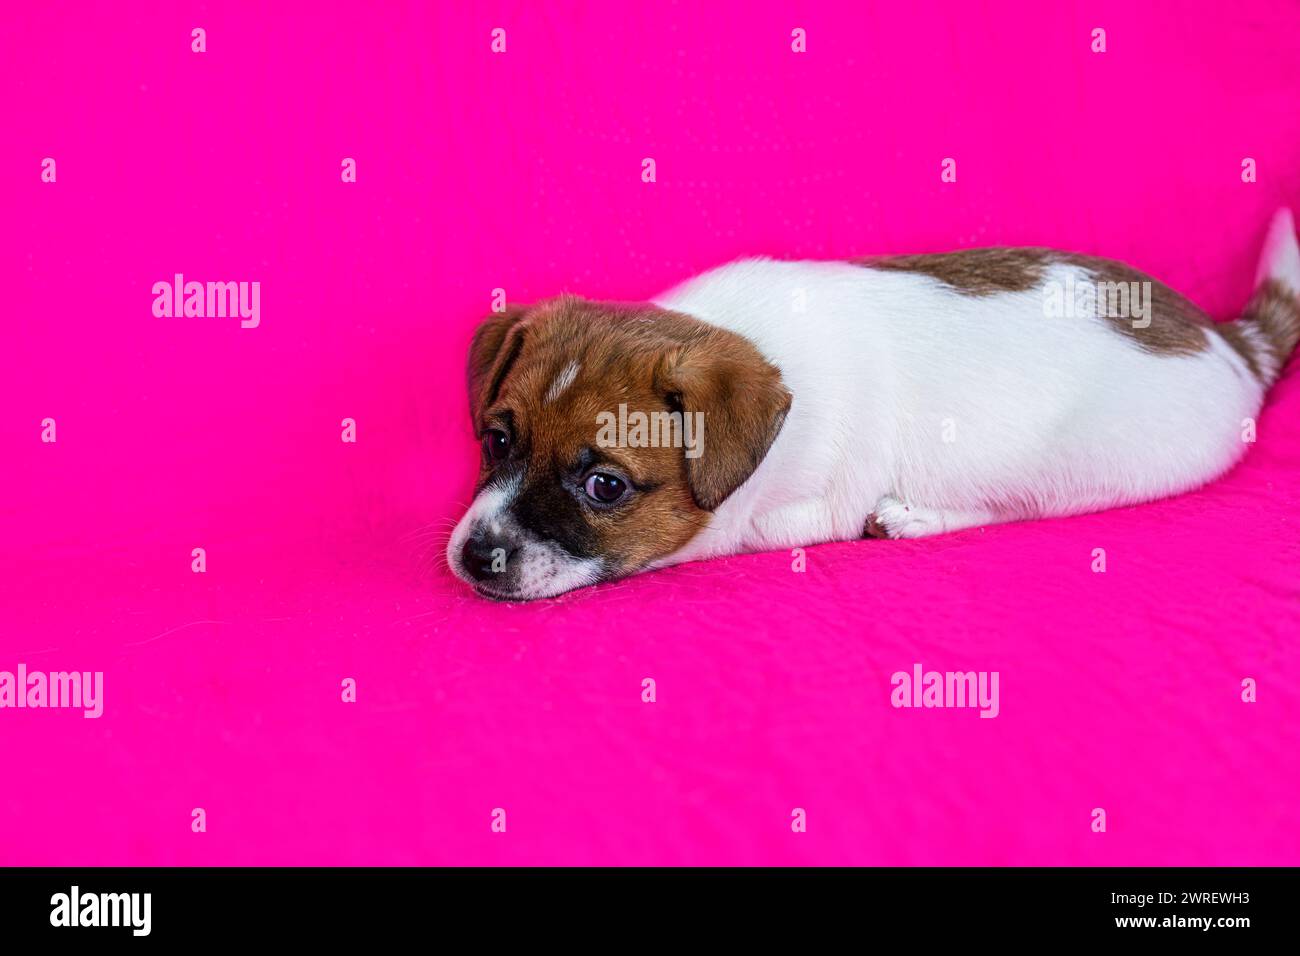 il simpatico cucciolo jack russell terrier giace su uno sfondo rosa brillante Foto Stock